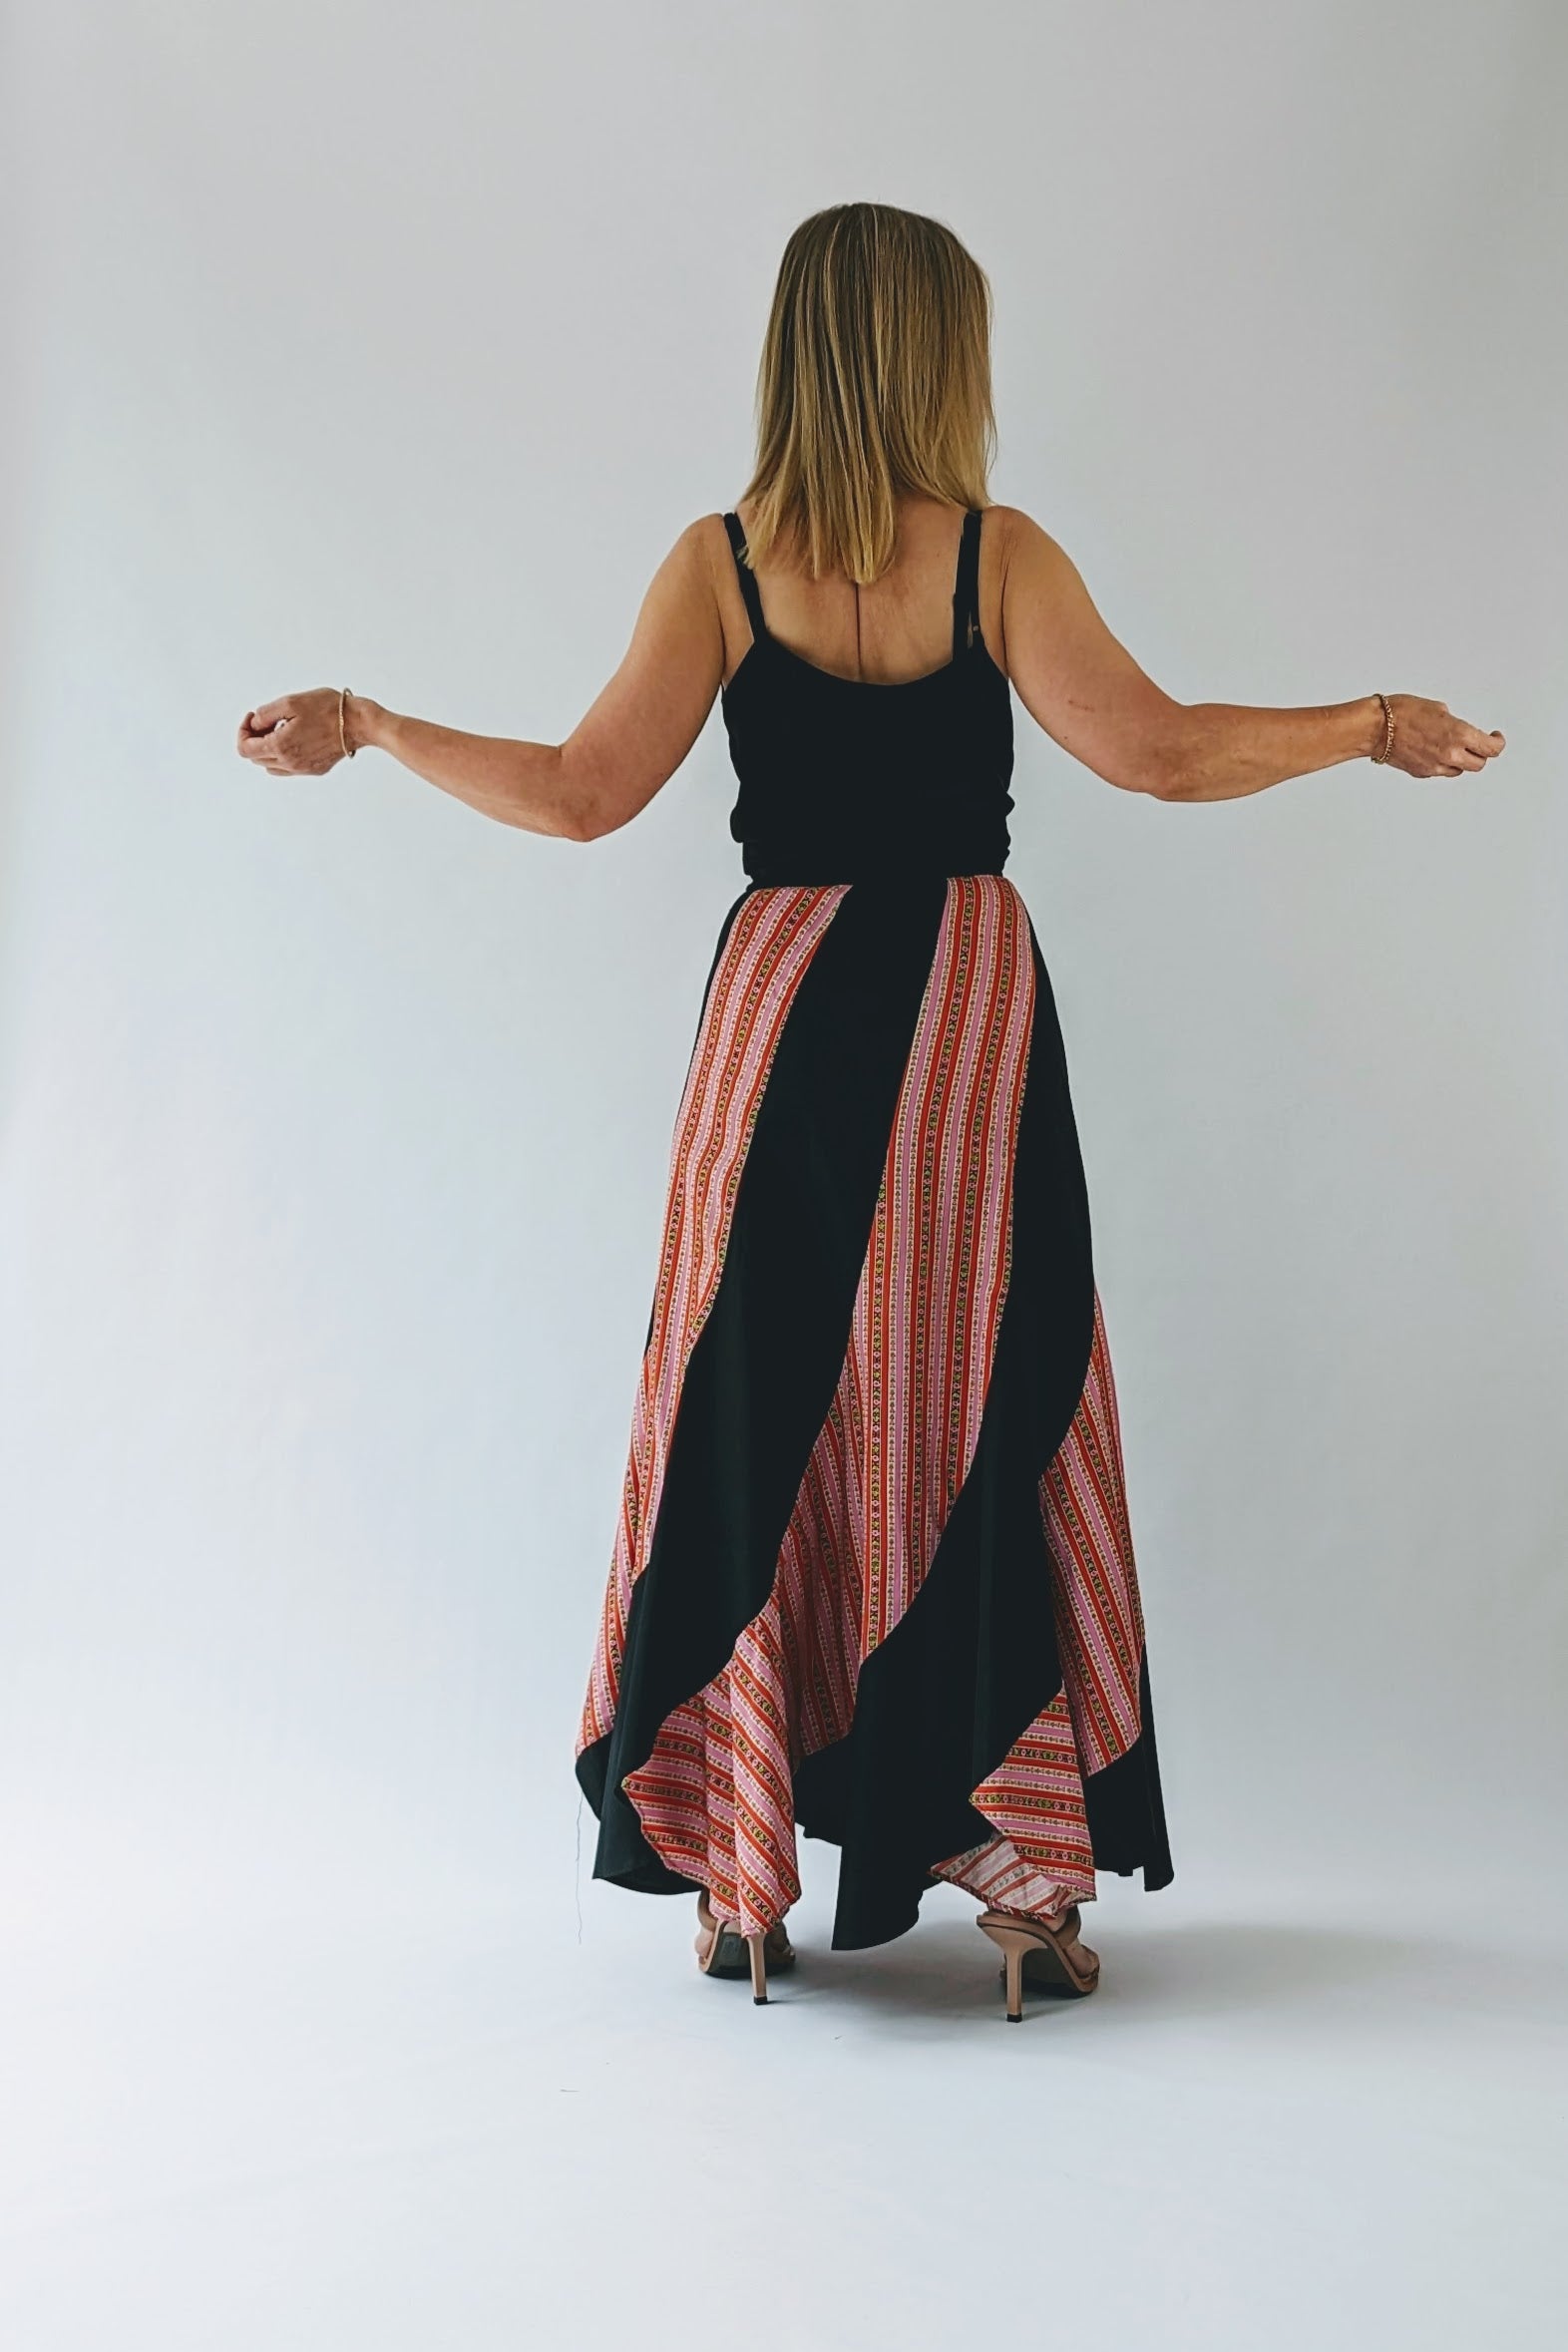 70s boho patterned skirt